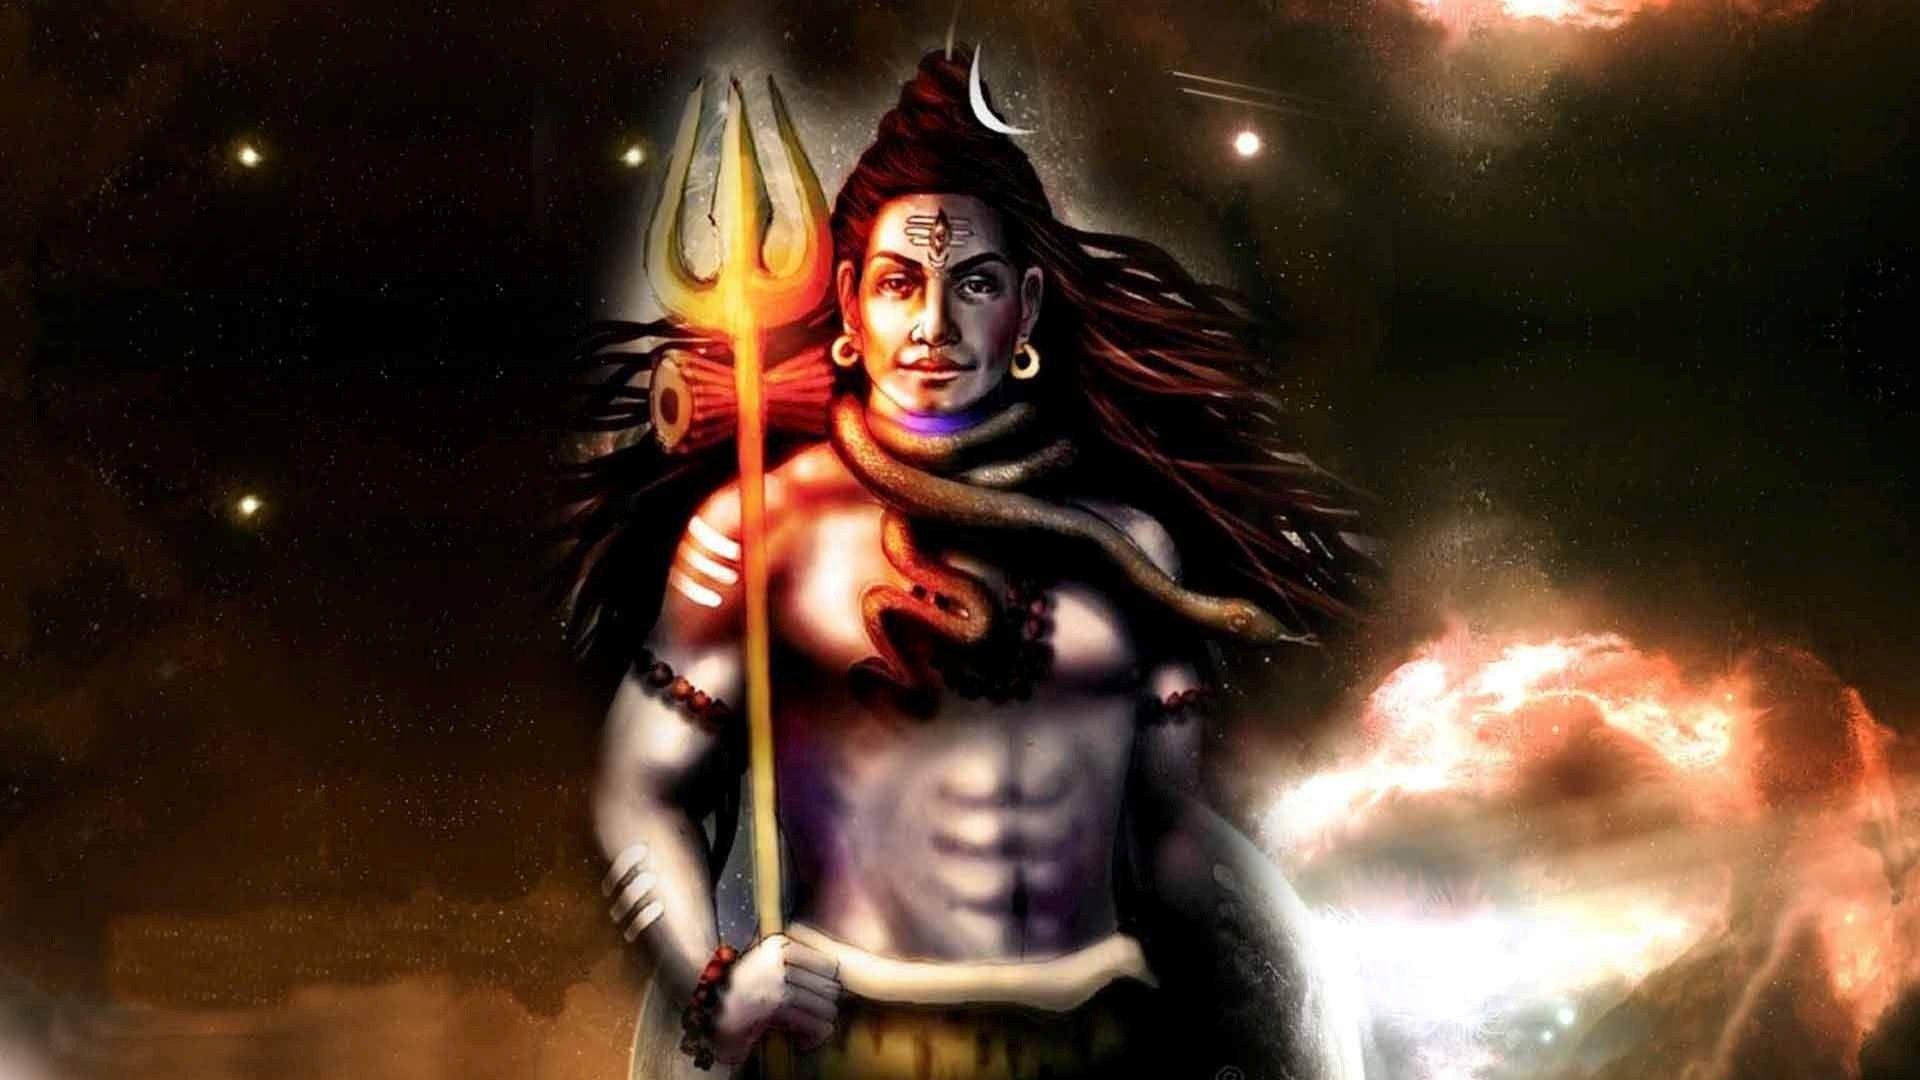 1920x1080 God Shiva Hình nền - 3D Animated Lord Shiva - 1920x1080 Hình nền - teahub.io